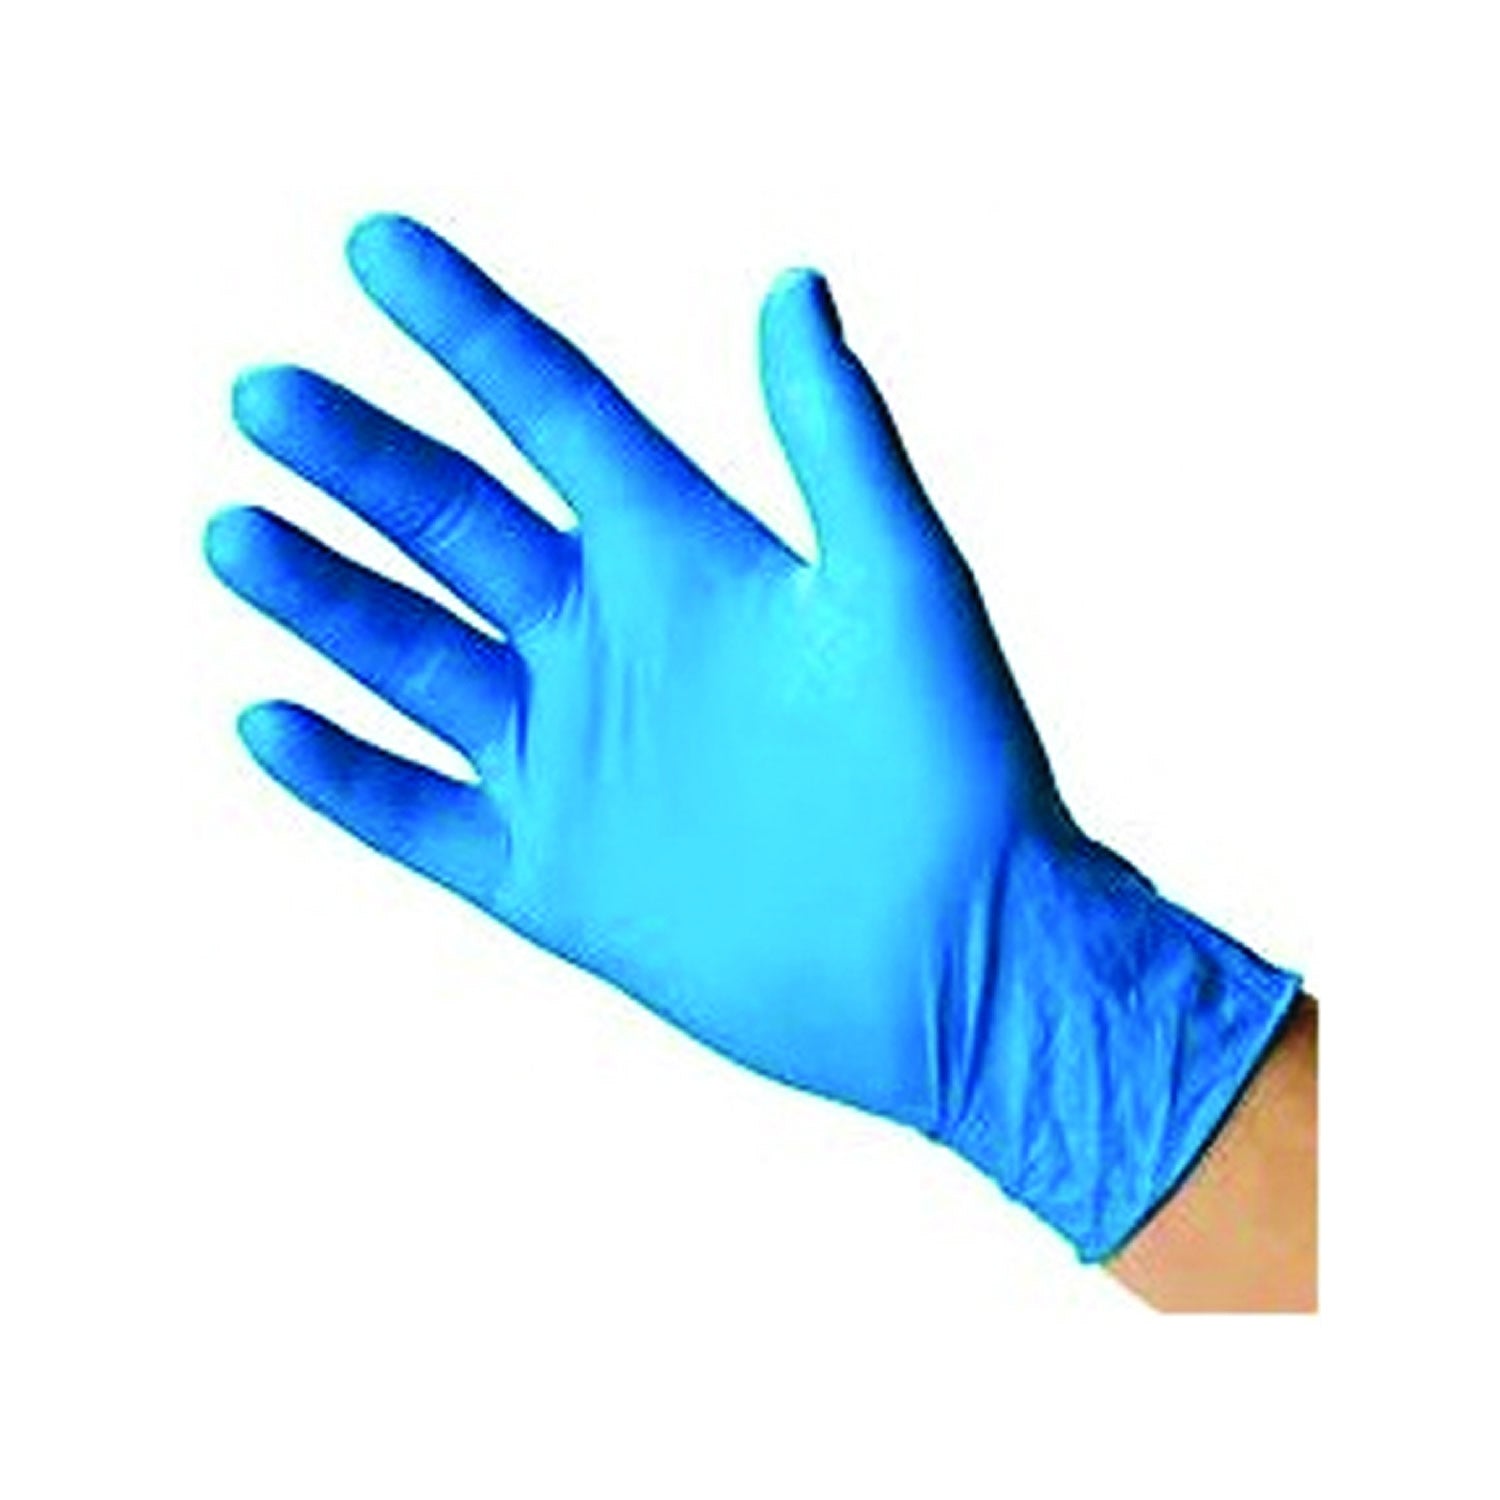 Guante desechable de nitrilo azul – Surtidora de Seguridad Industrial